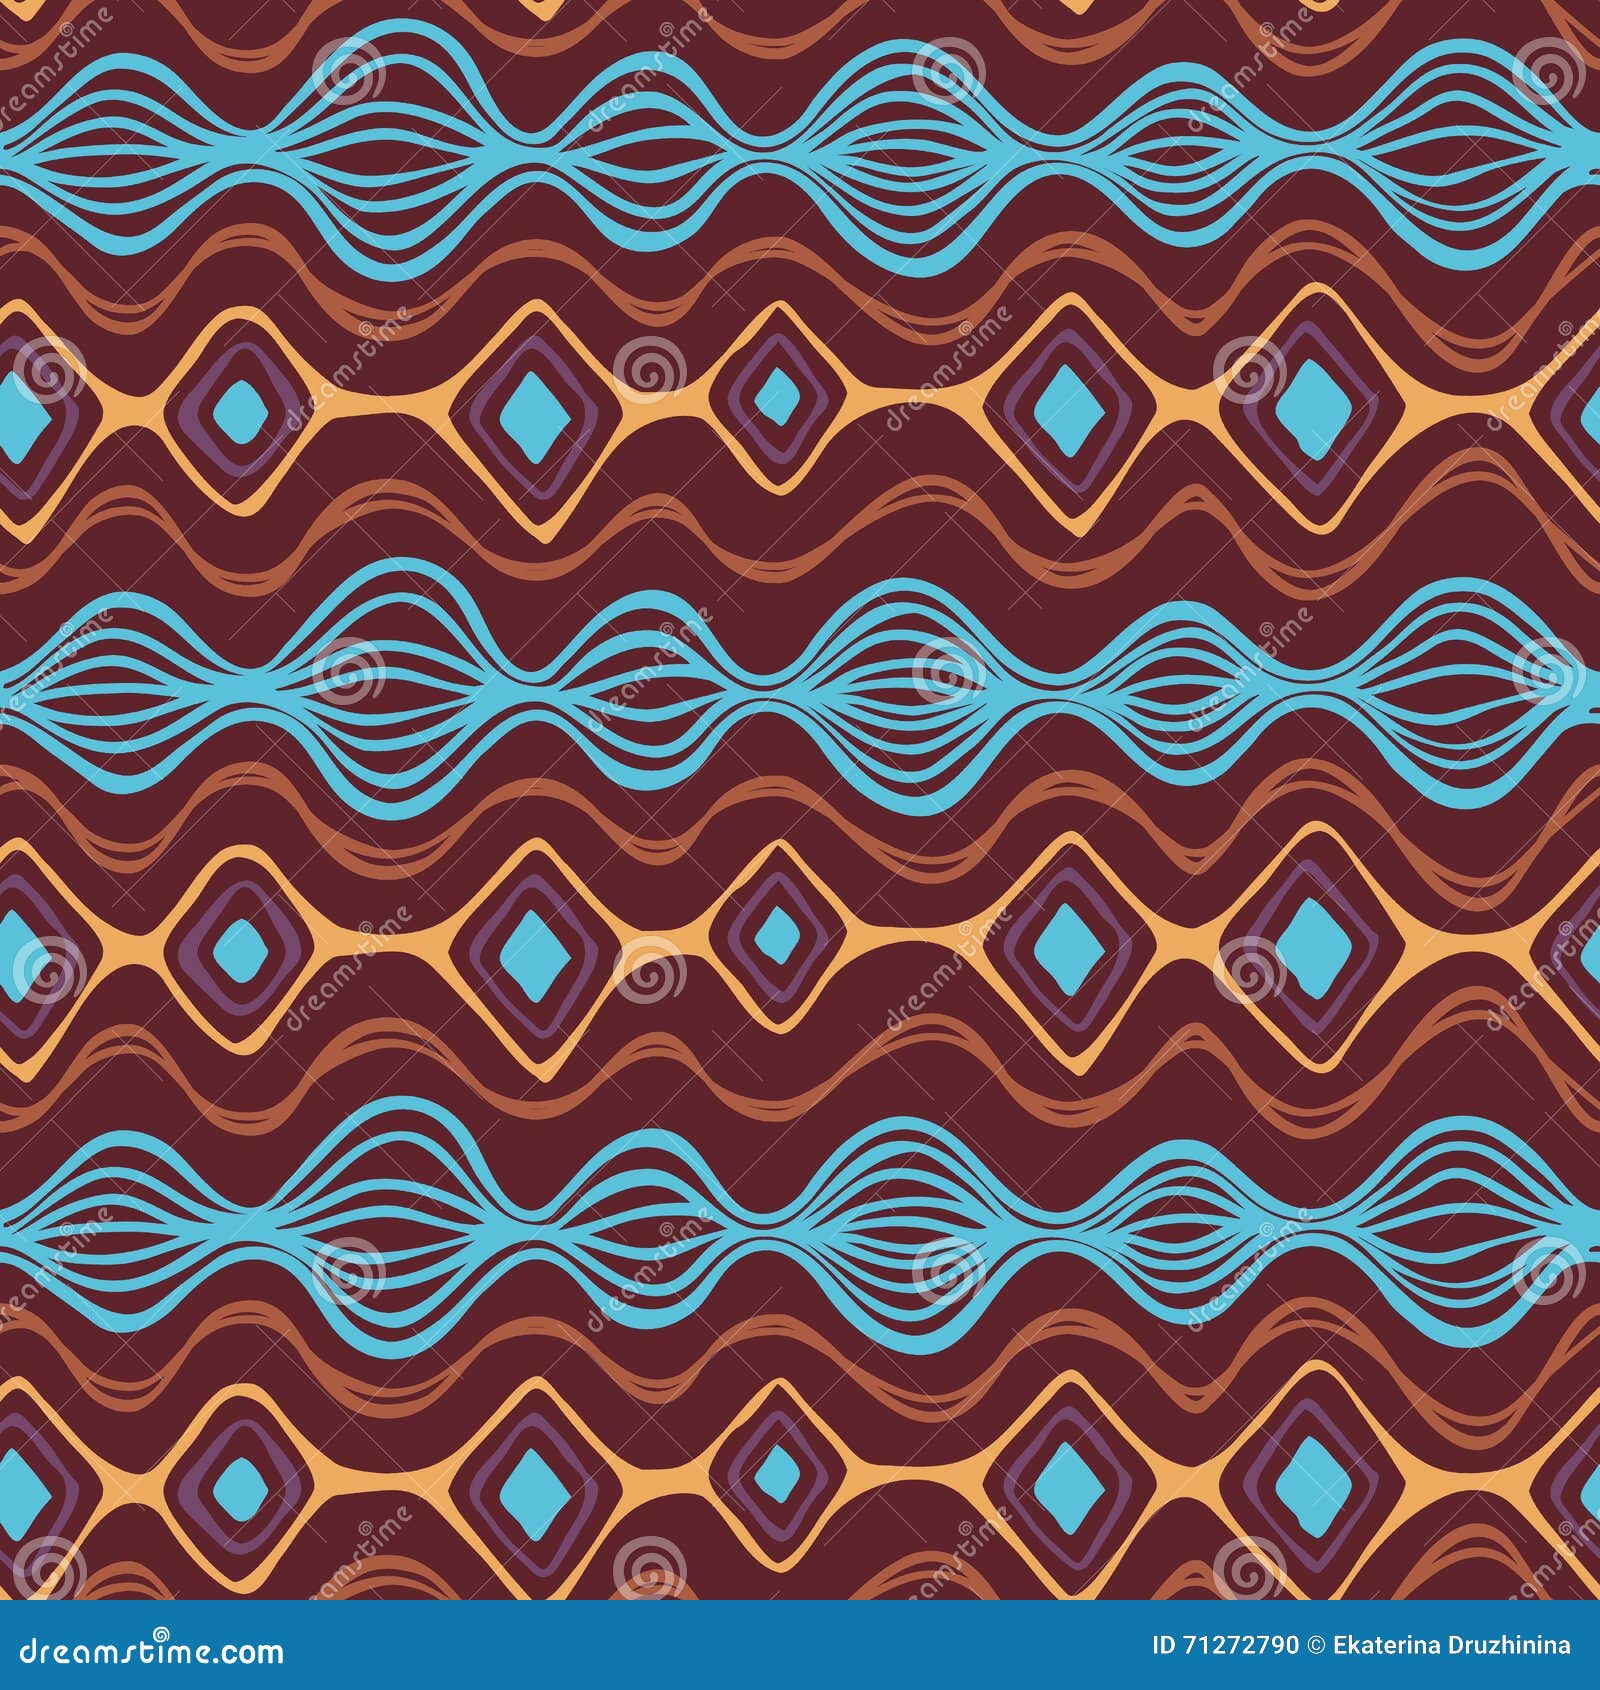 boho seamless pattern